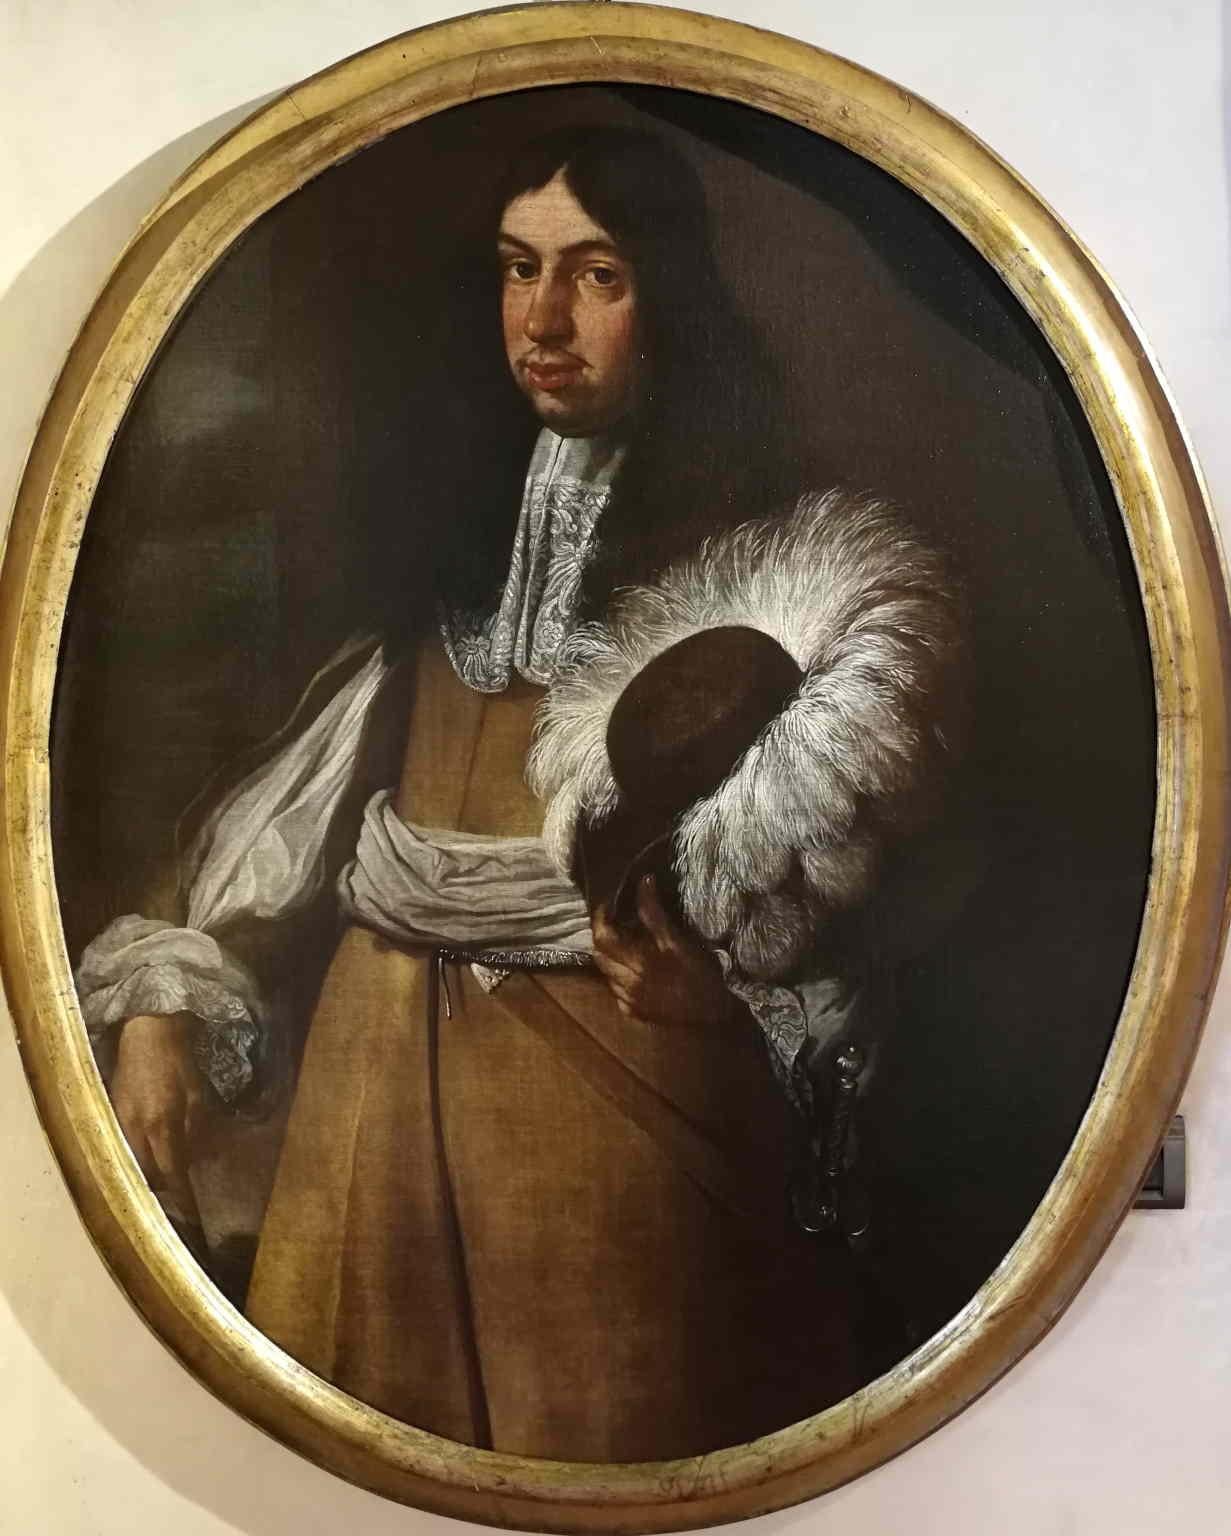 Unknown Portrait Painting - Ritratto figurativo maschile scuola toscana del XVII secolo olio su tela